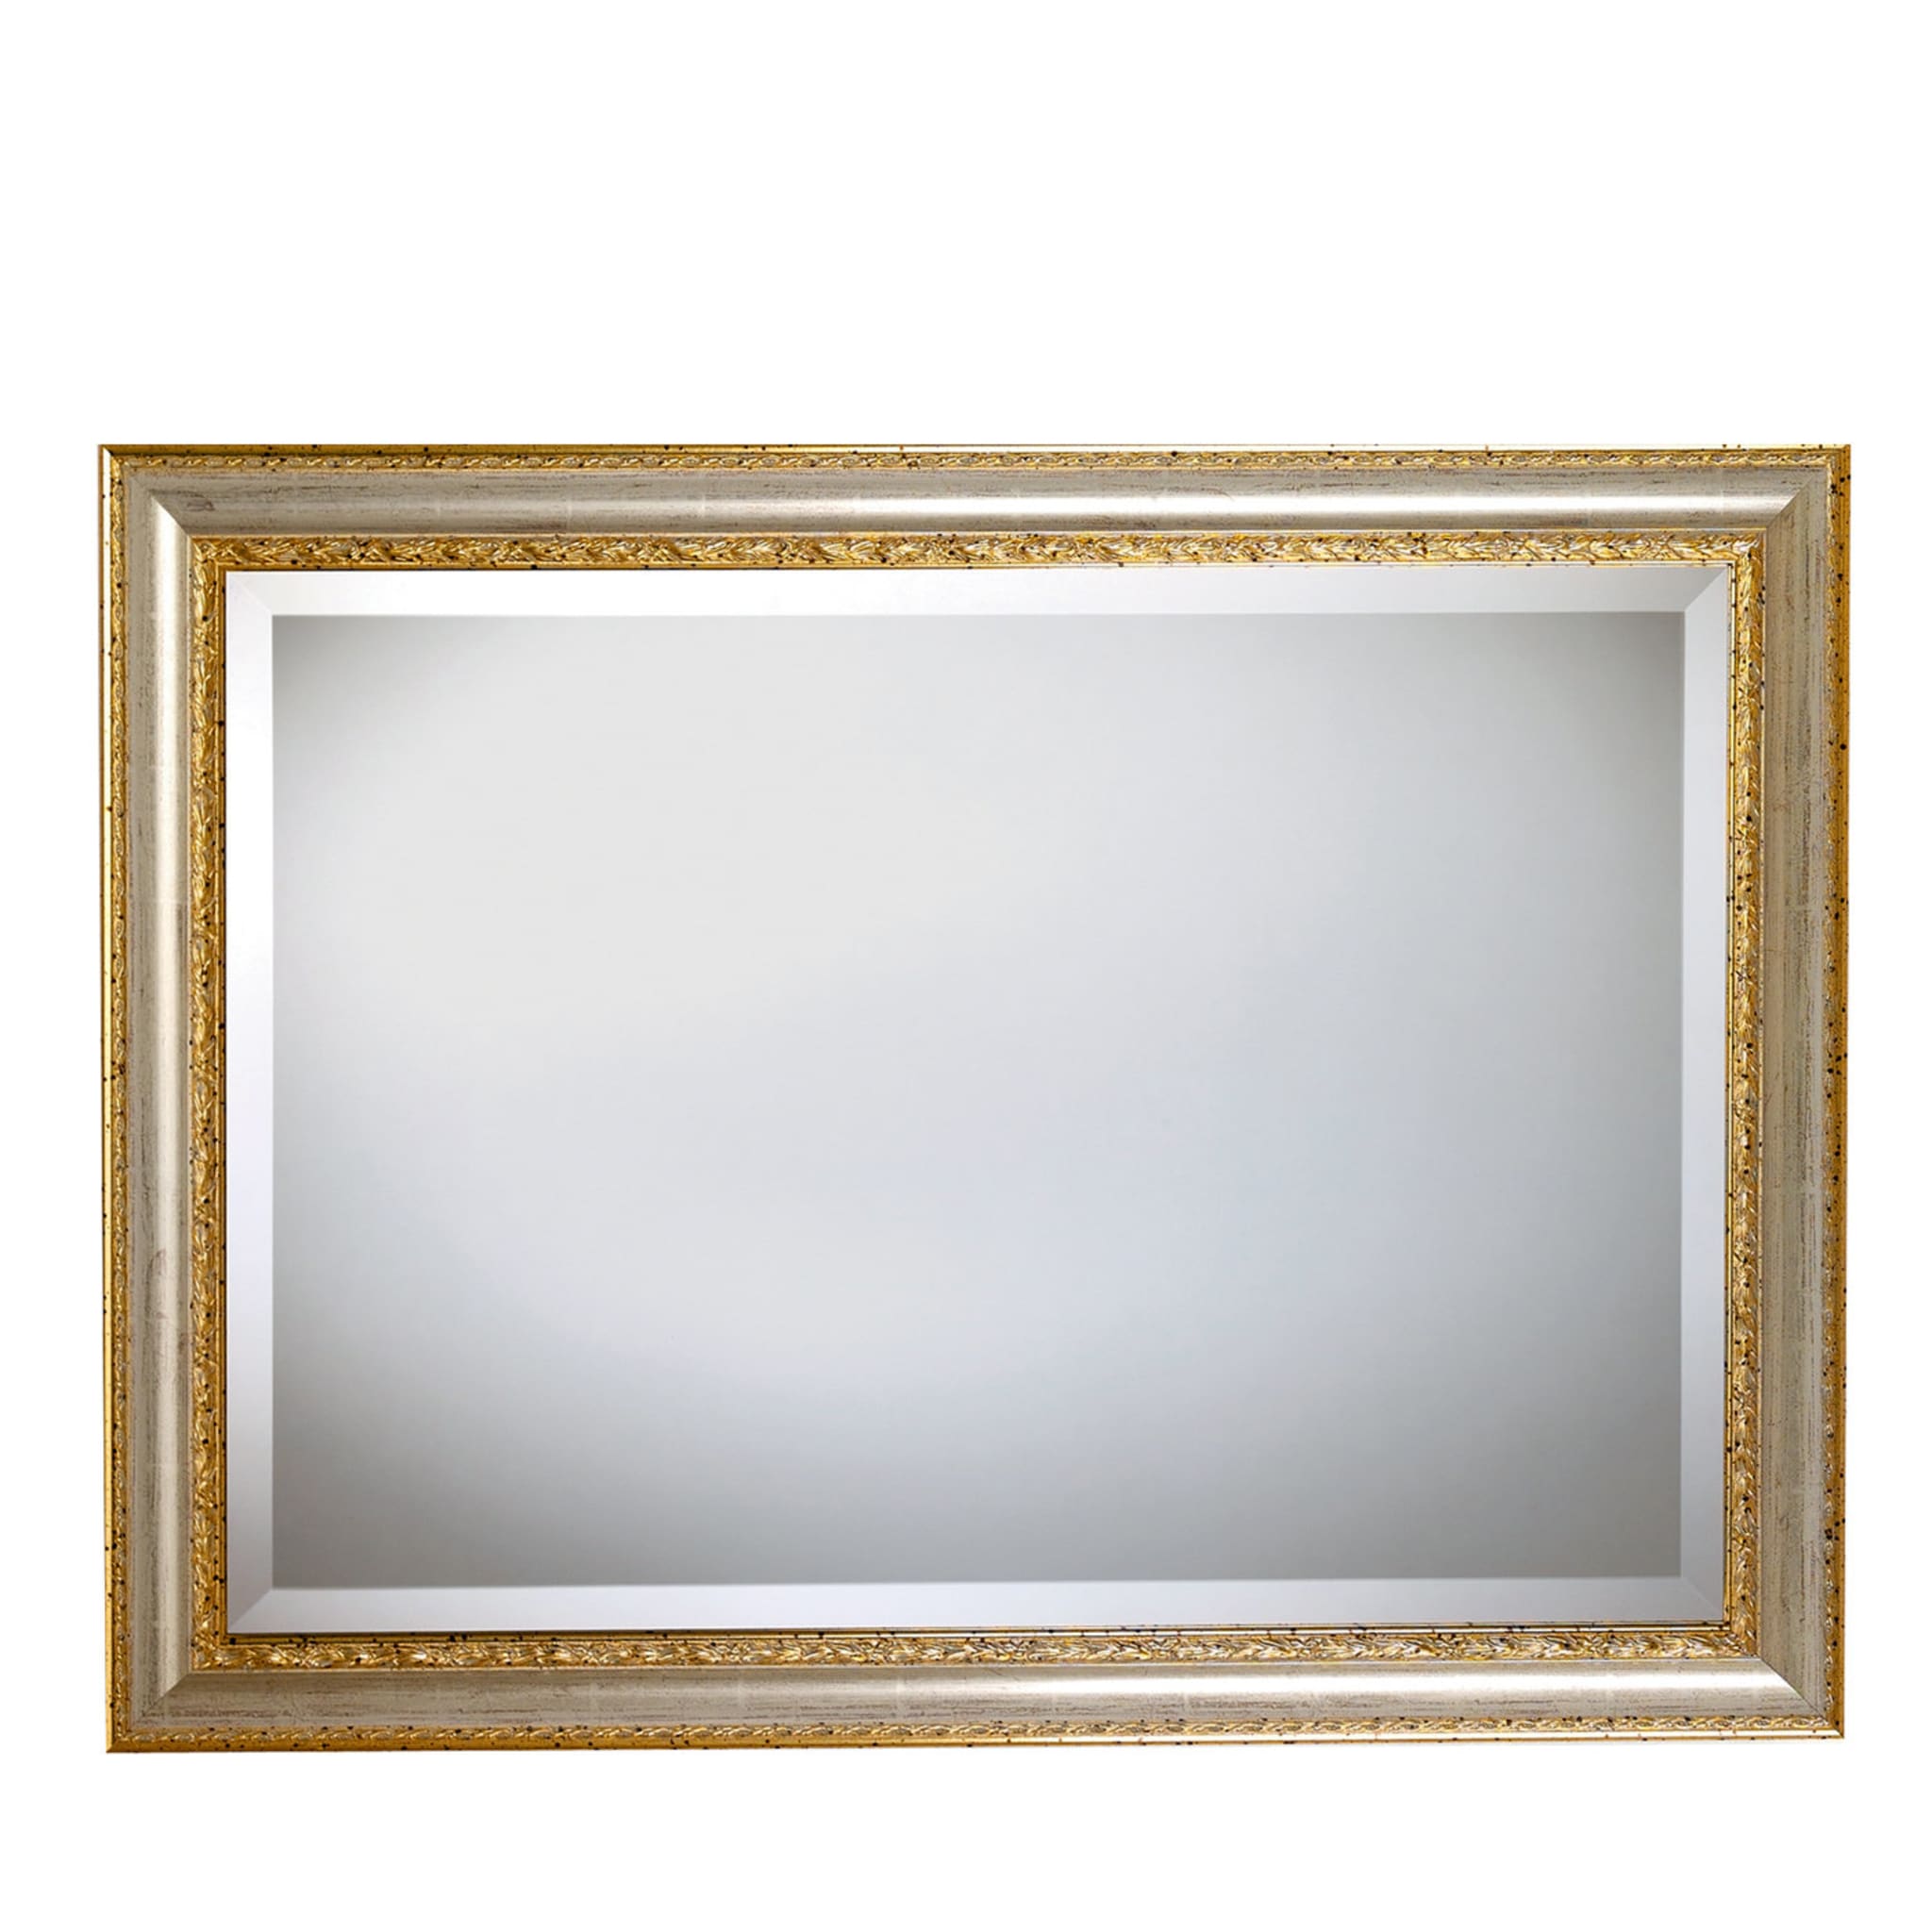 Specchio rettangolare con cornice dorata - Vista principale